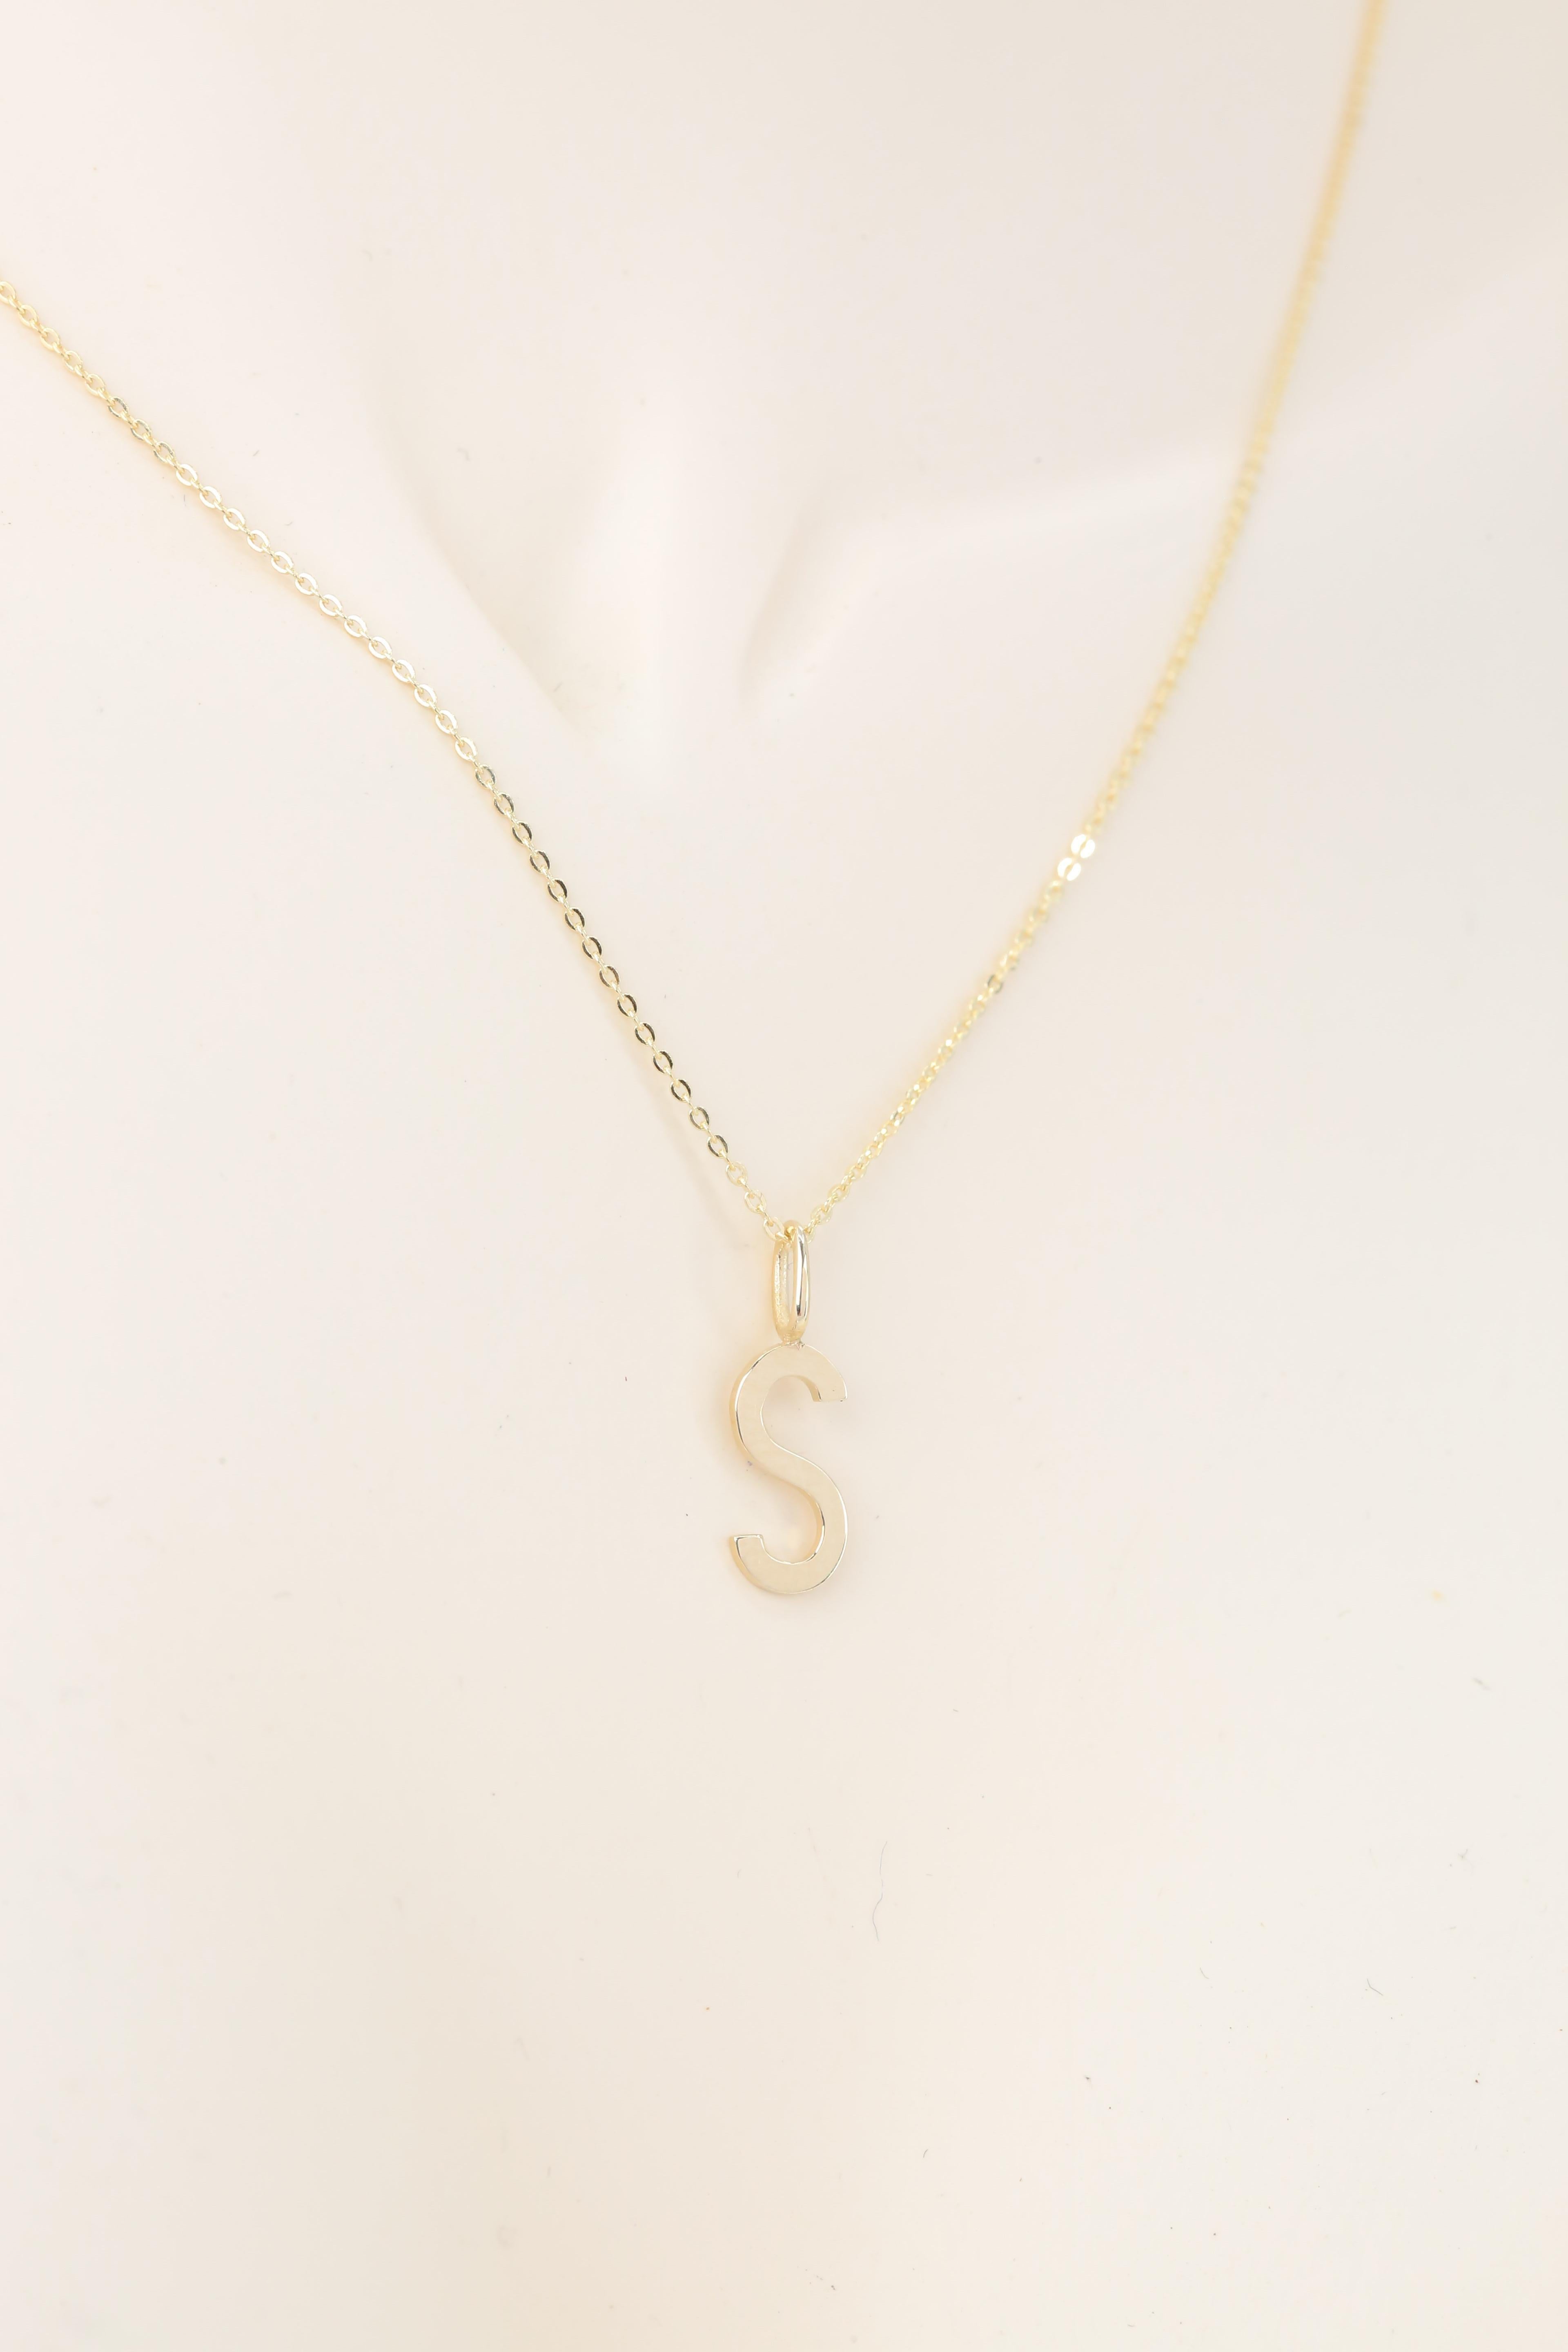 14k Gold Necklaces, Letter Necklace Models, Letter S Gold Necklace-Gift Necklace For Sale 1